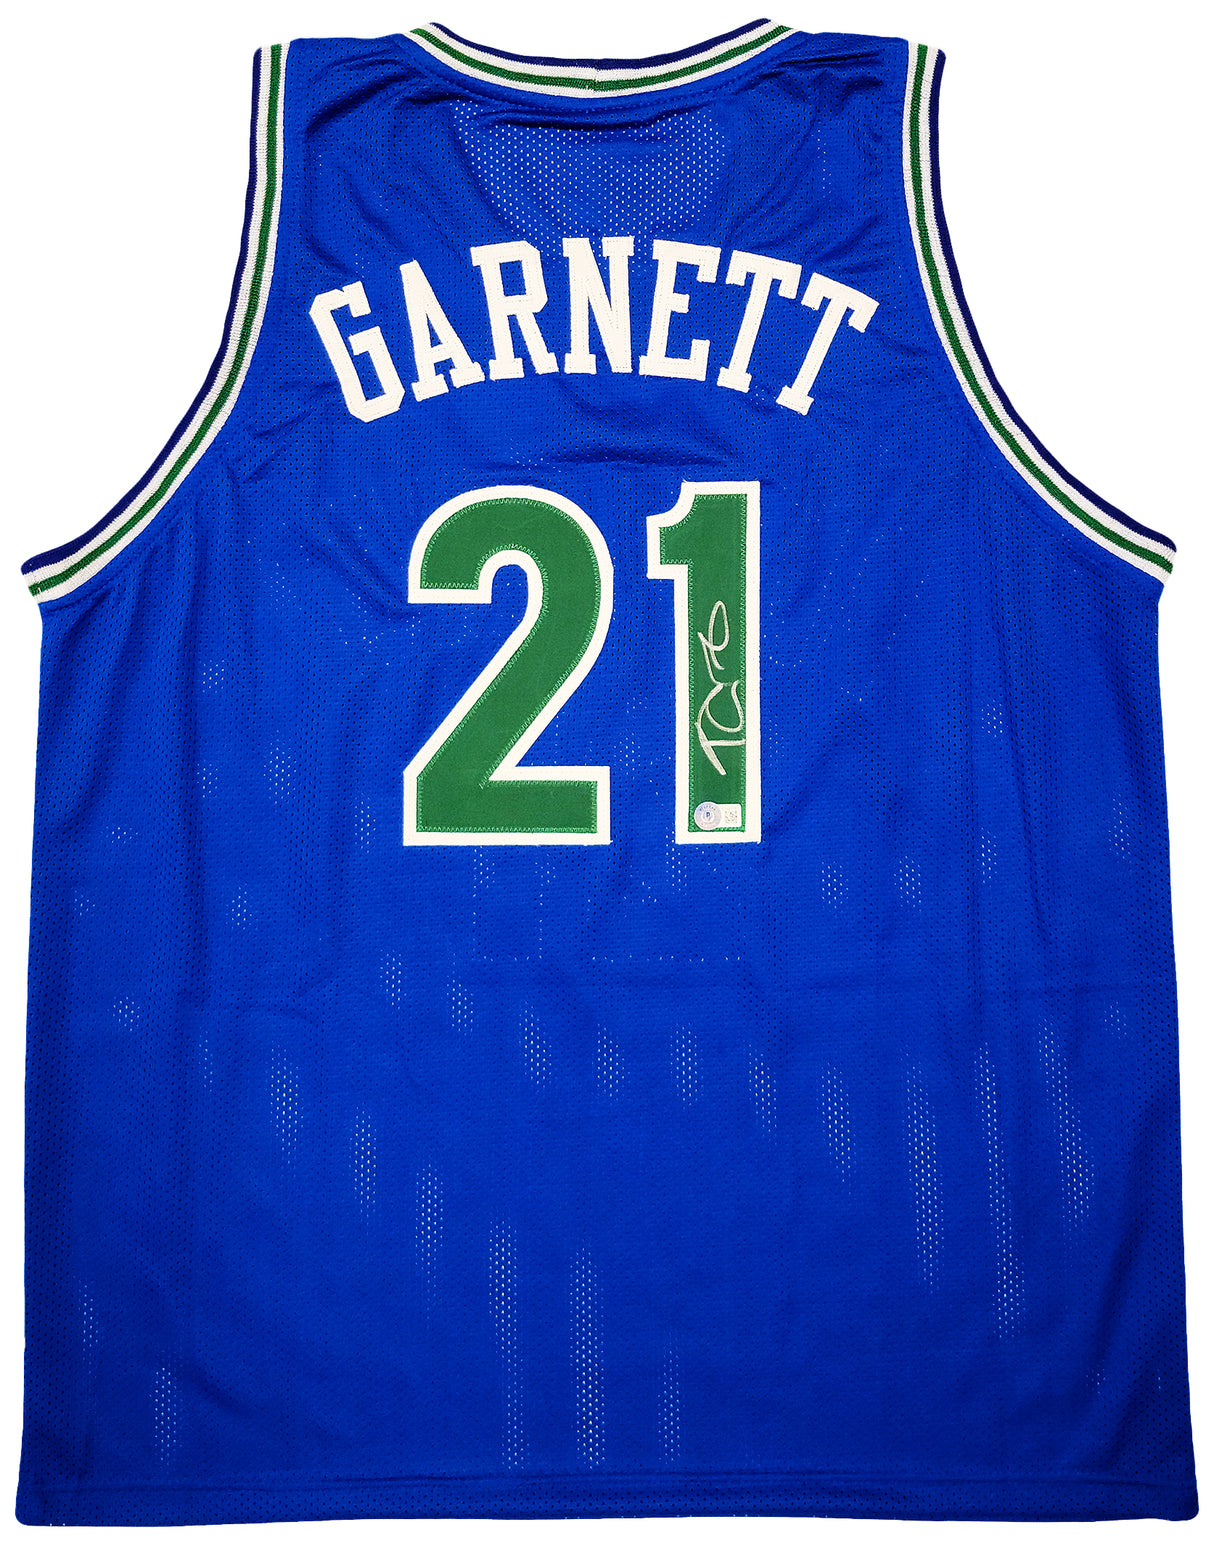 Minnesota Timberwolves Kevin Garnett Autographed Blue Jersey Beckett BAS QR Stock #203549